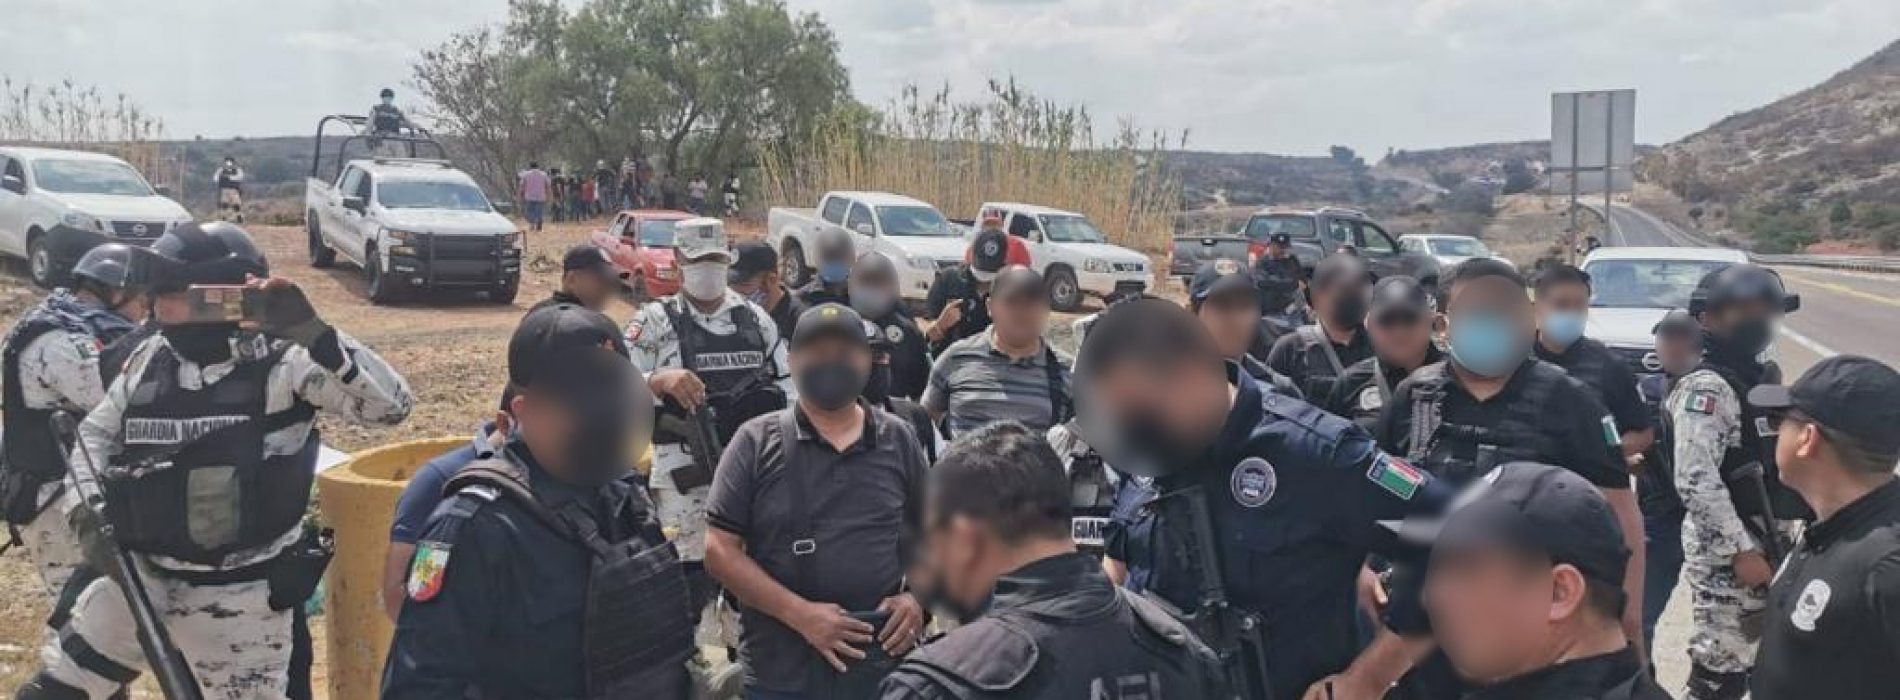 AEI coordina y ejecuta cateos simultáneos  en Asunción Nochixtlán: Fiscalía General